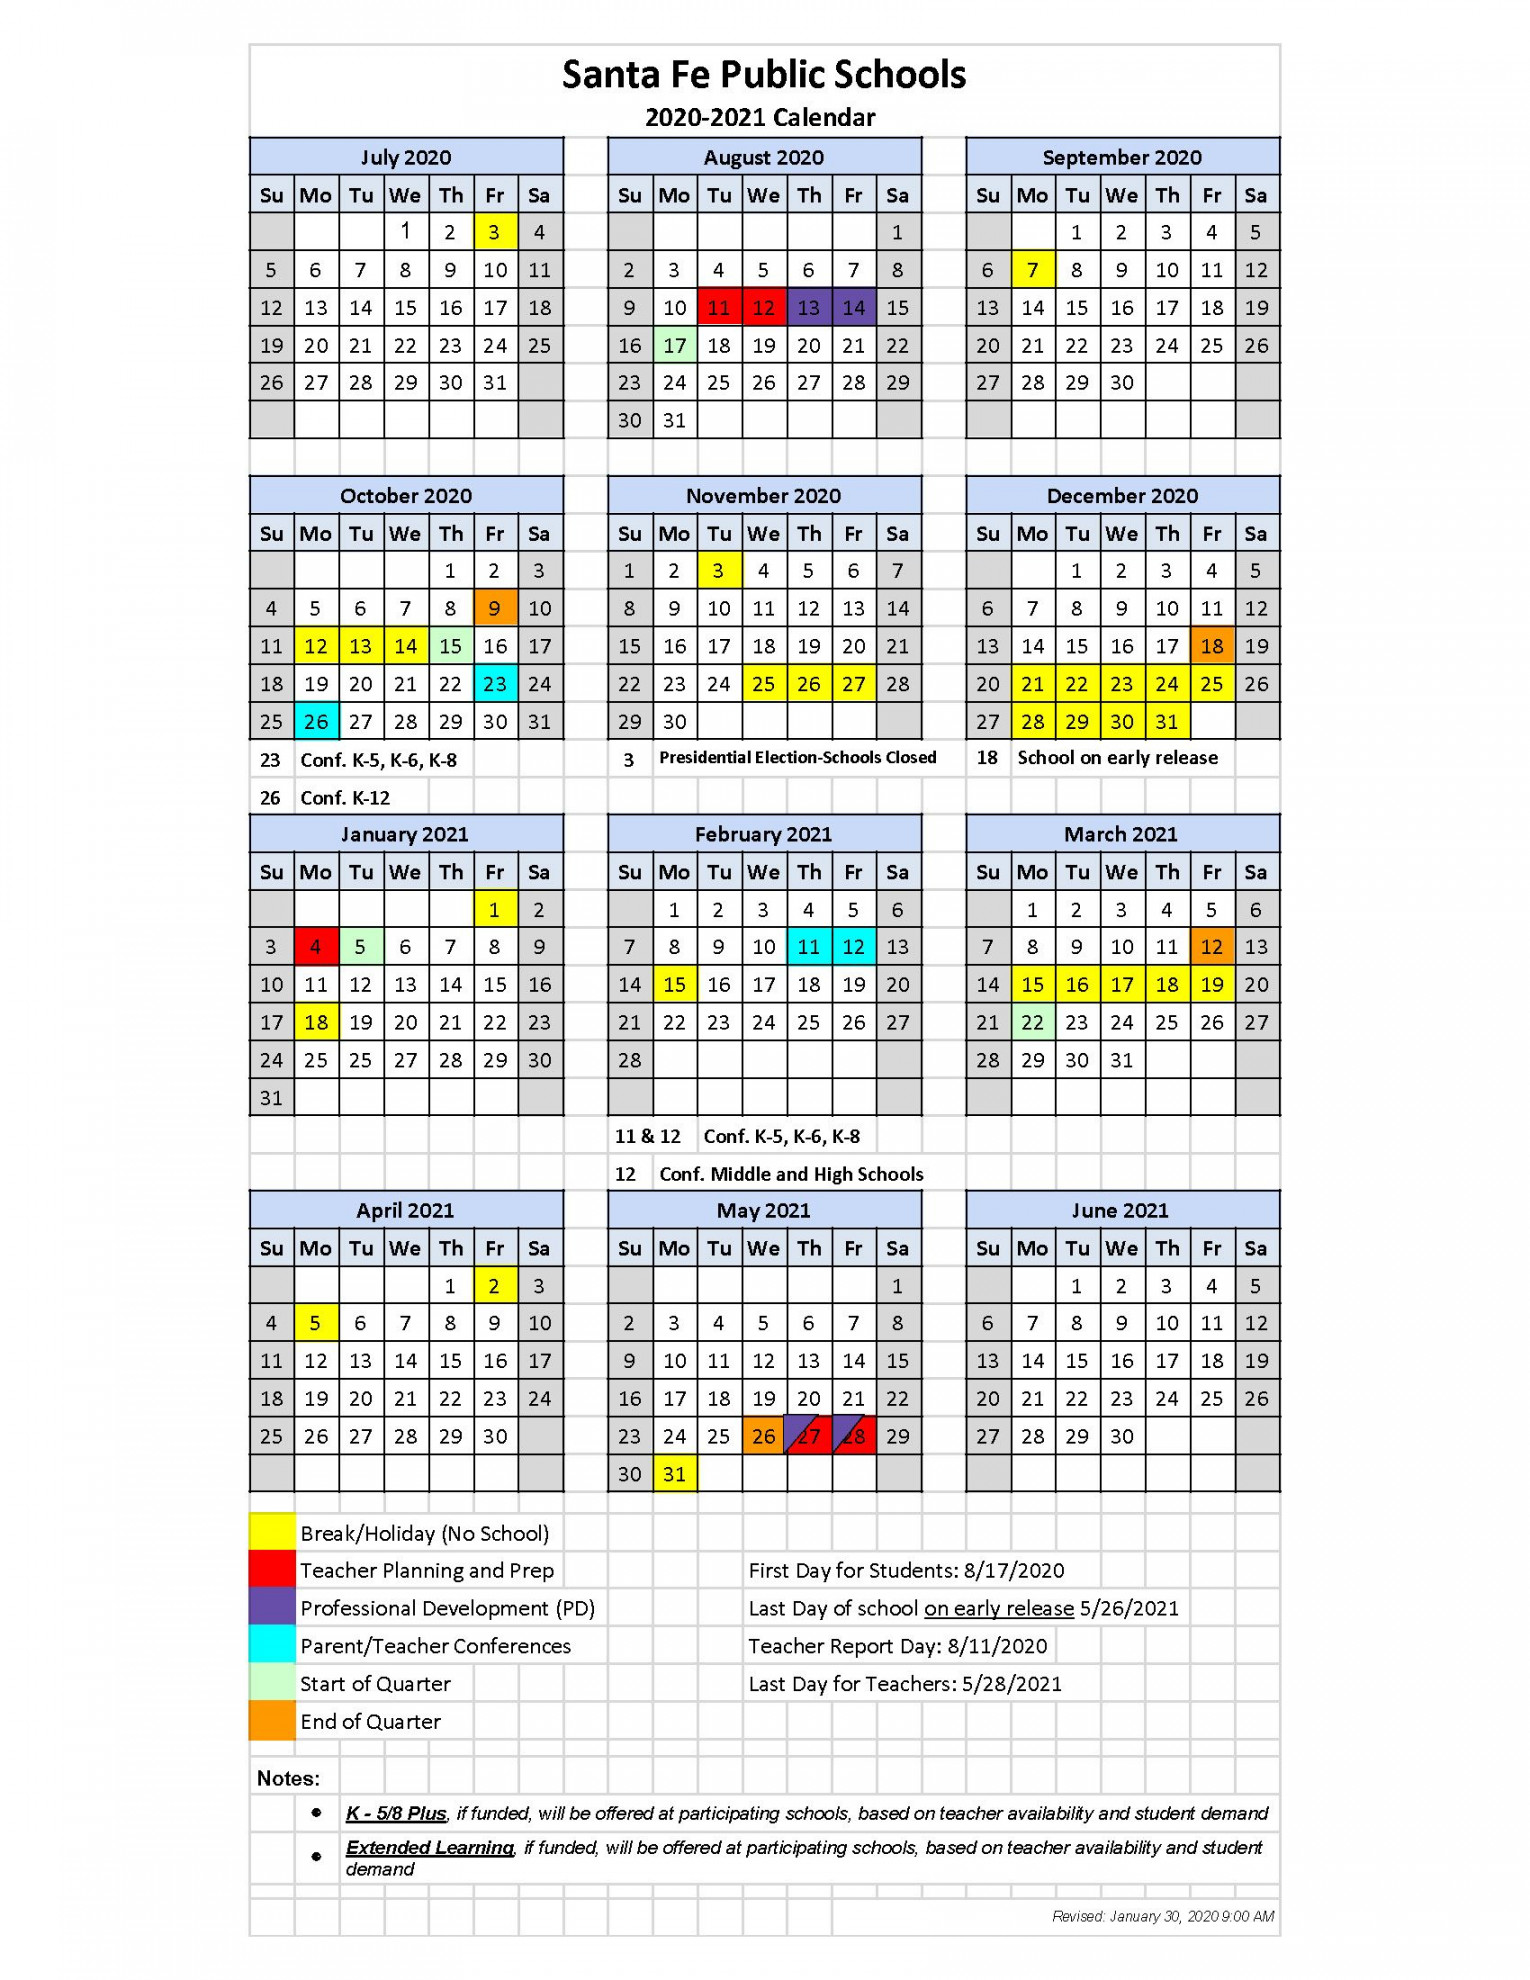 Santa Fe Public Schools Calendar  Calendar examples, Printable